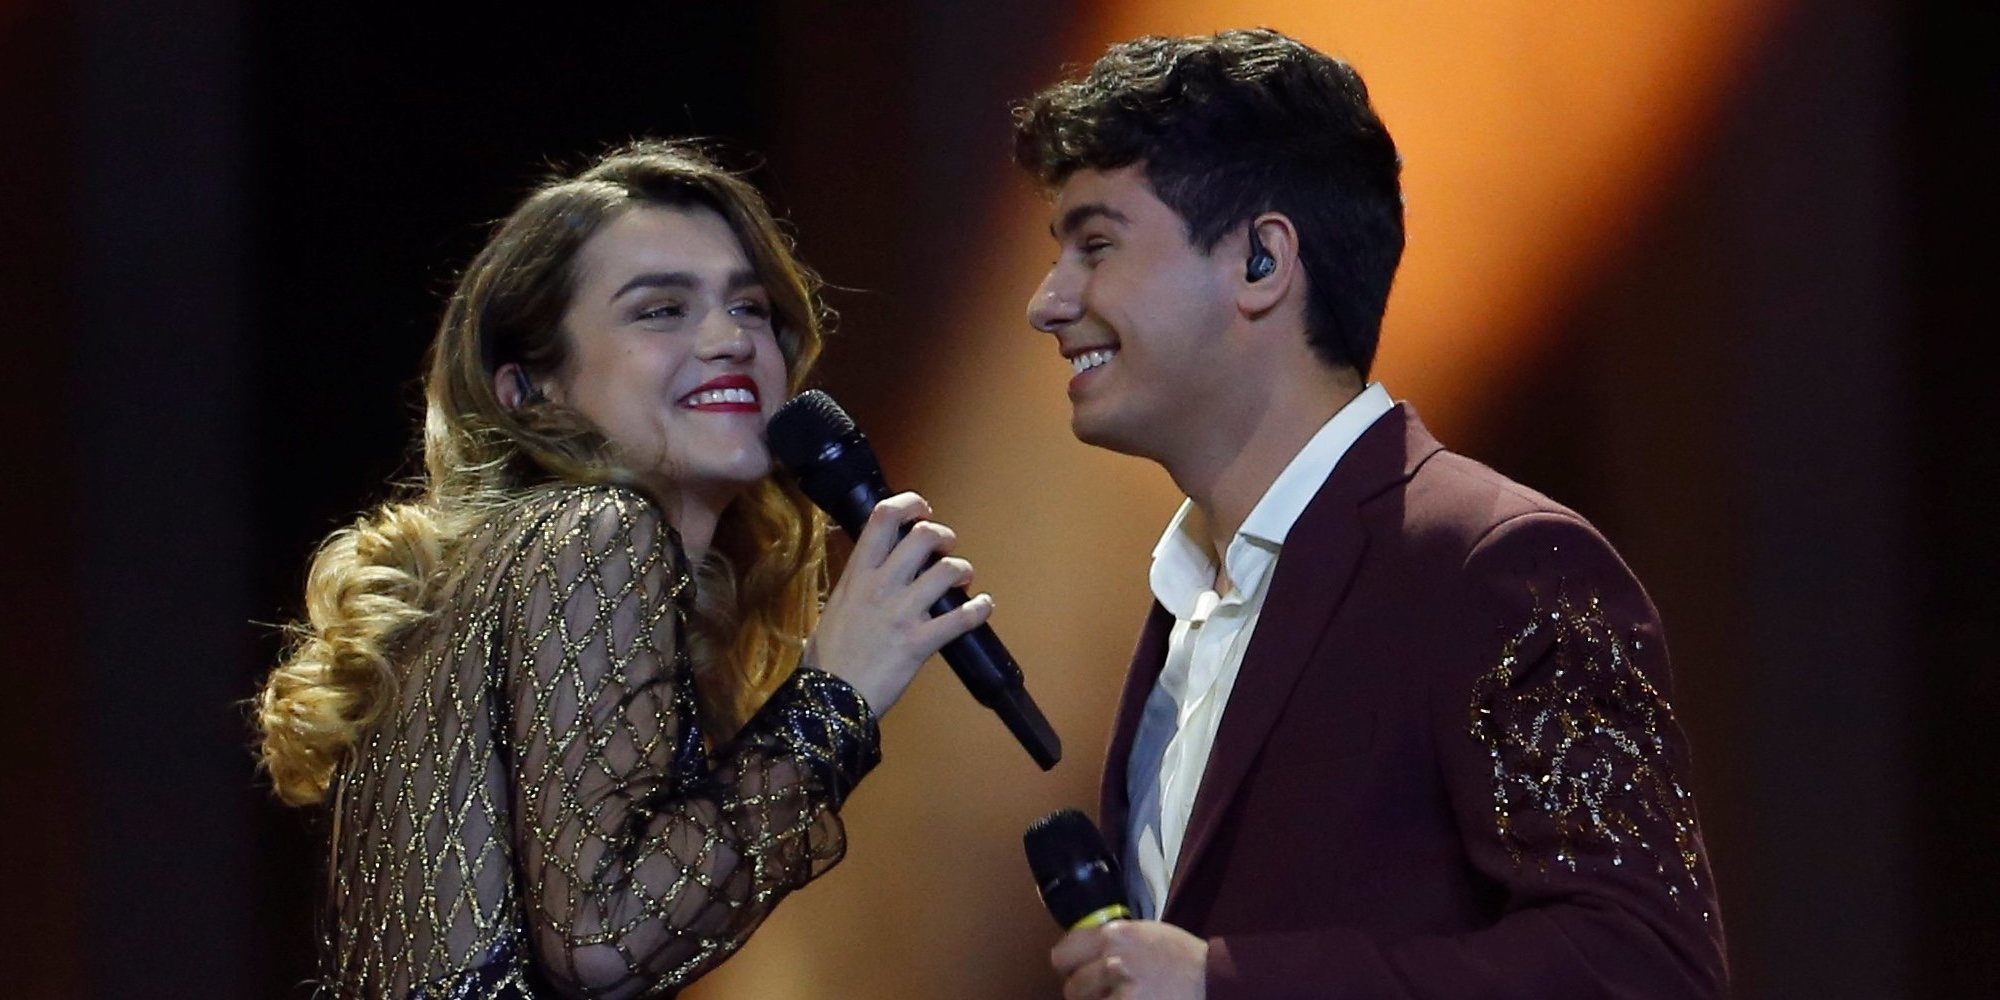 España queda en el puesto 23 de Eurovisión 2018 con los 61 puntos otorgados a 'Tu canción' de Amaia y Alfred